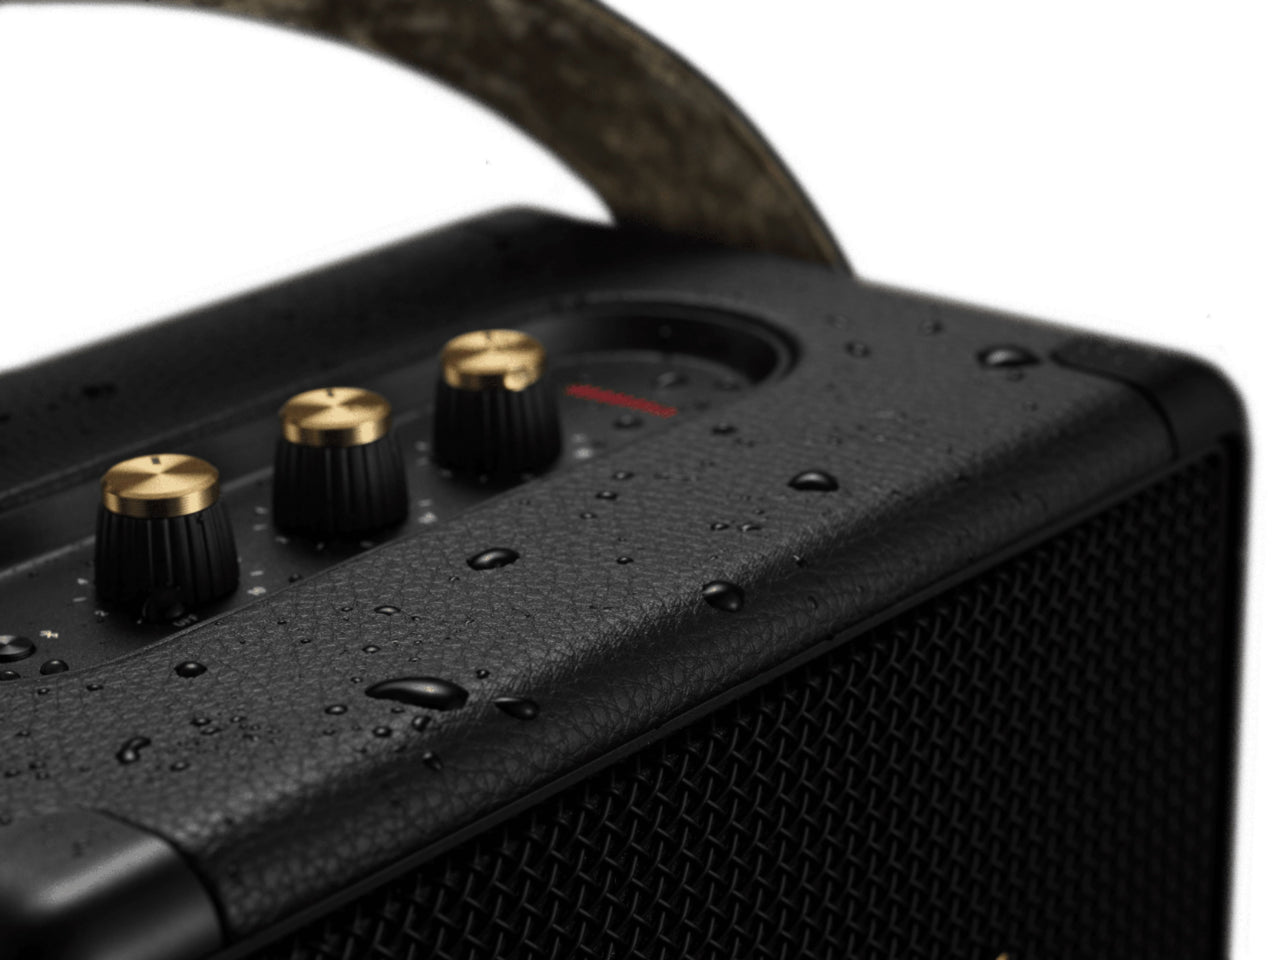 Marshall - Kilburn II Portable Bluetooth Speaker - Black and Brass